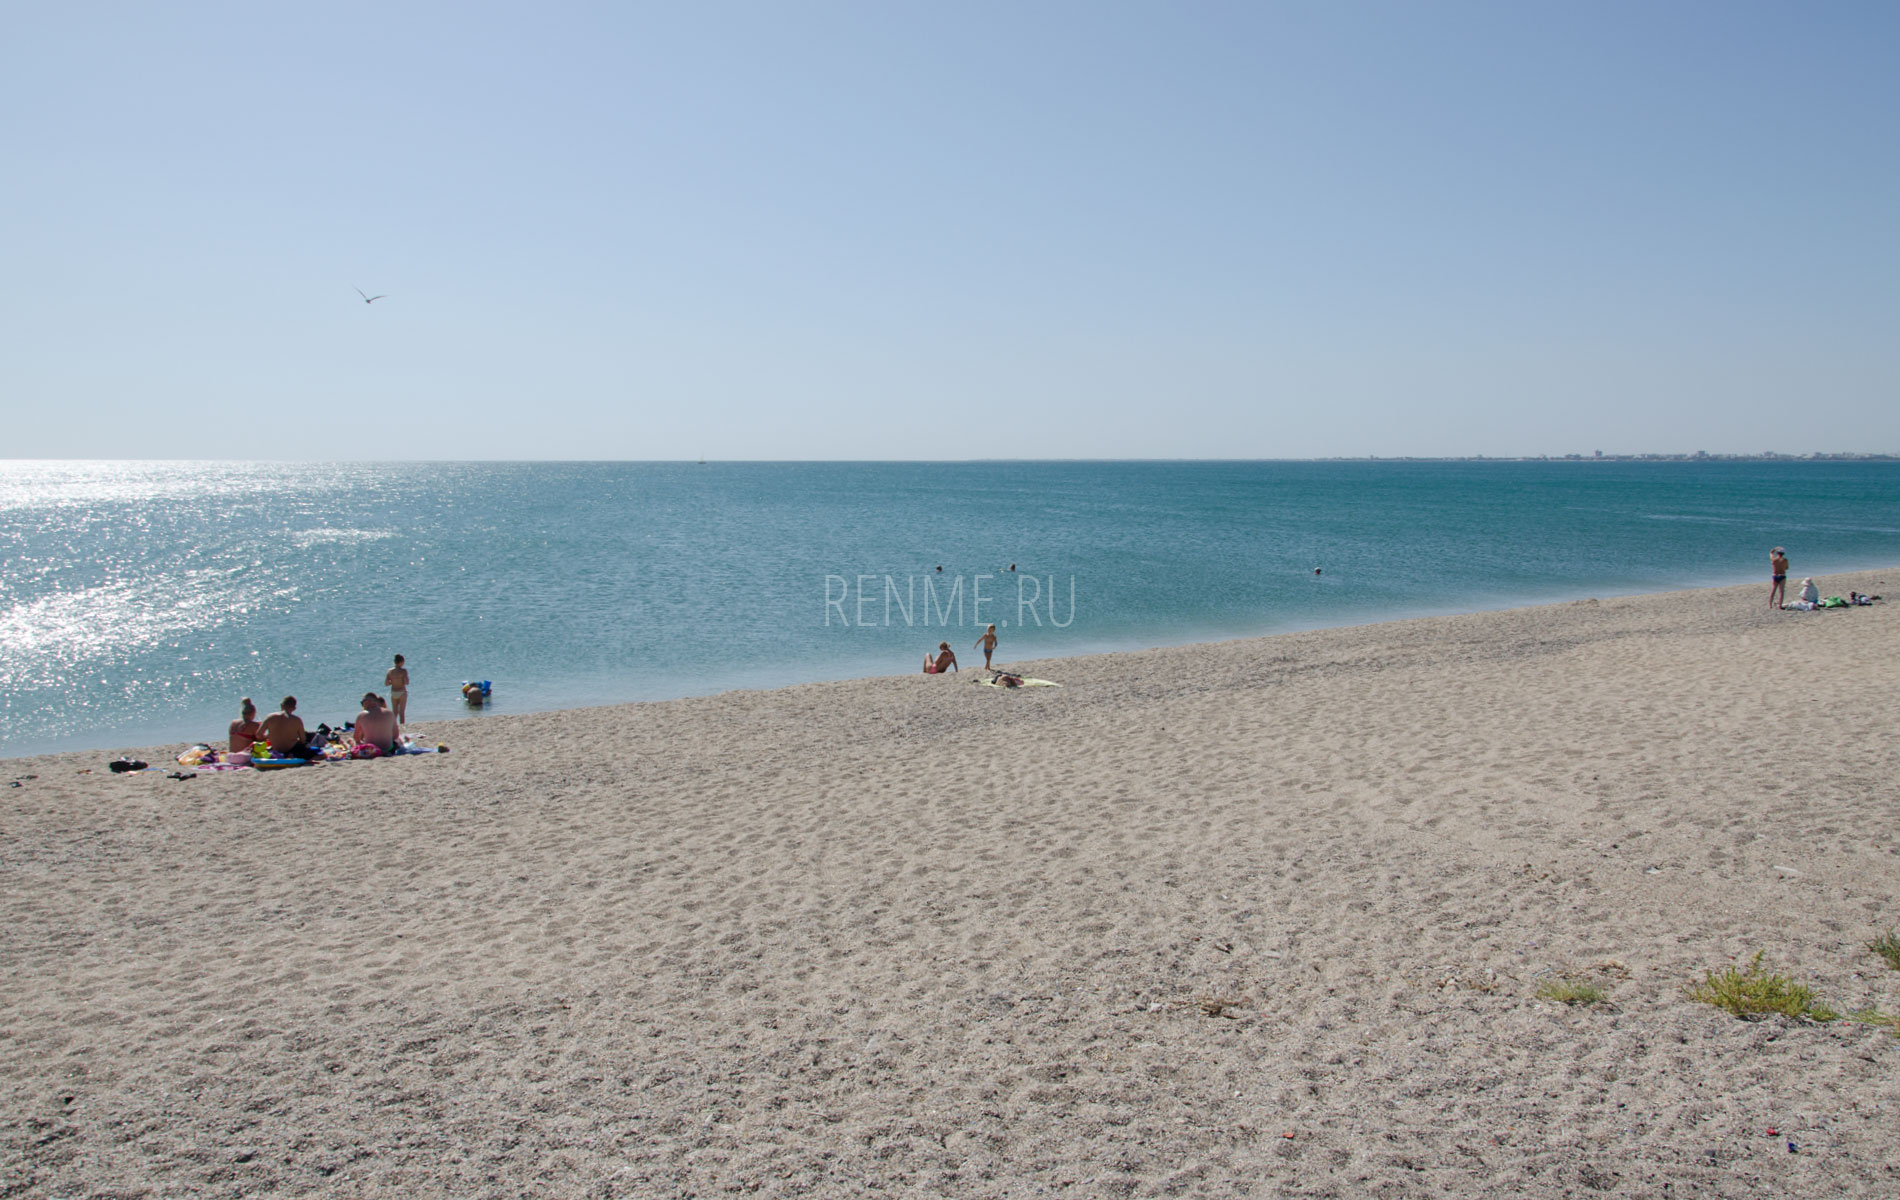 Пляж и море в конце августа 2019. Фото Евпатории